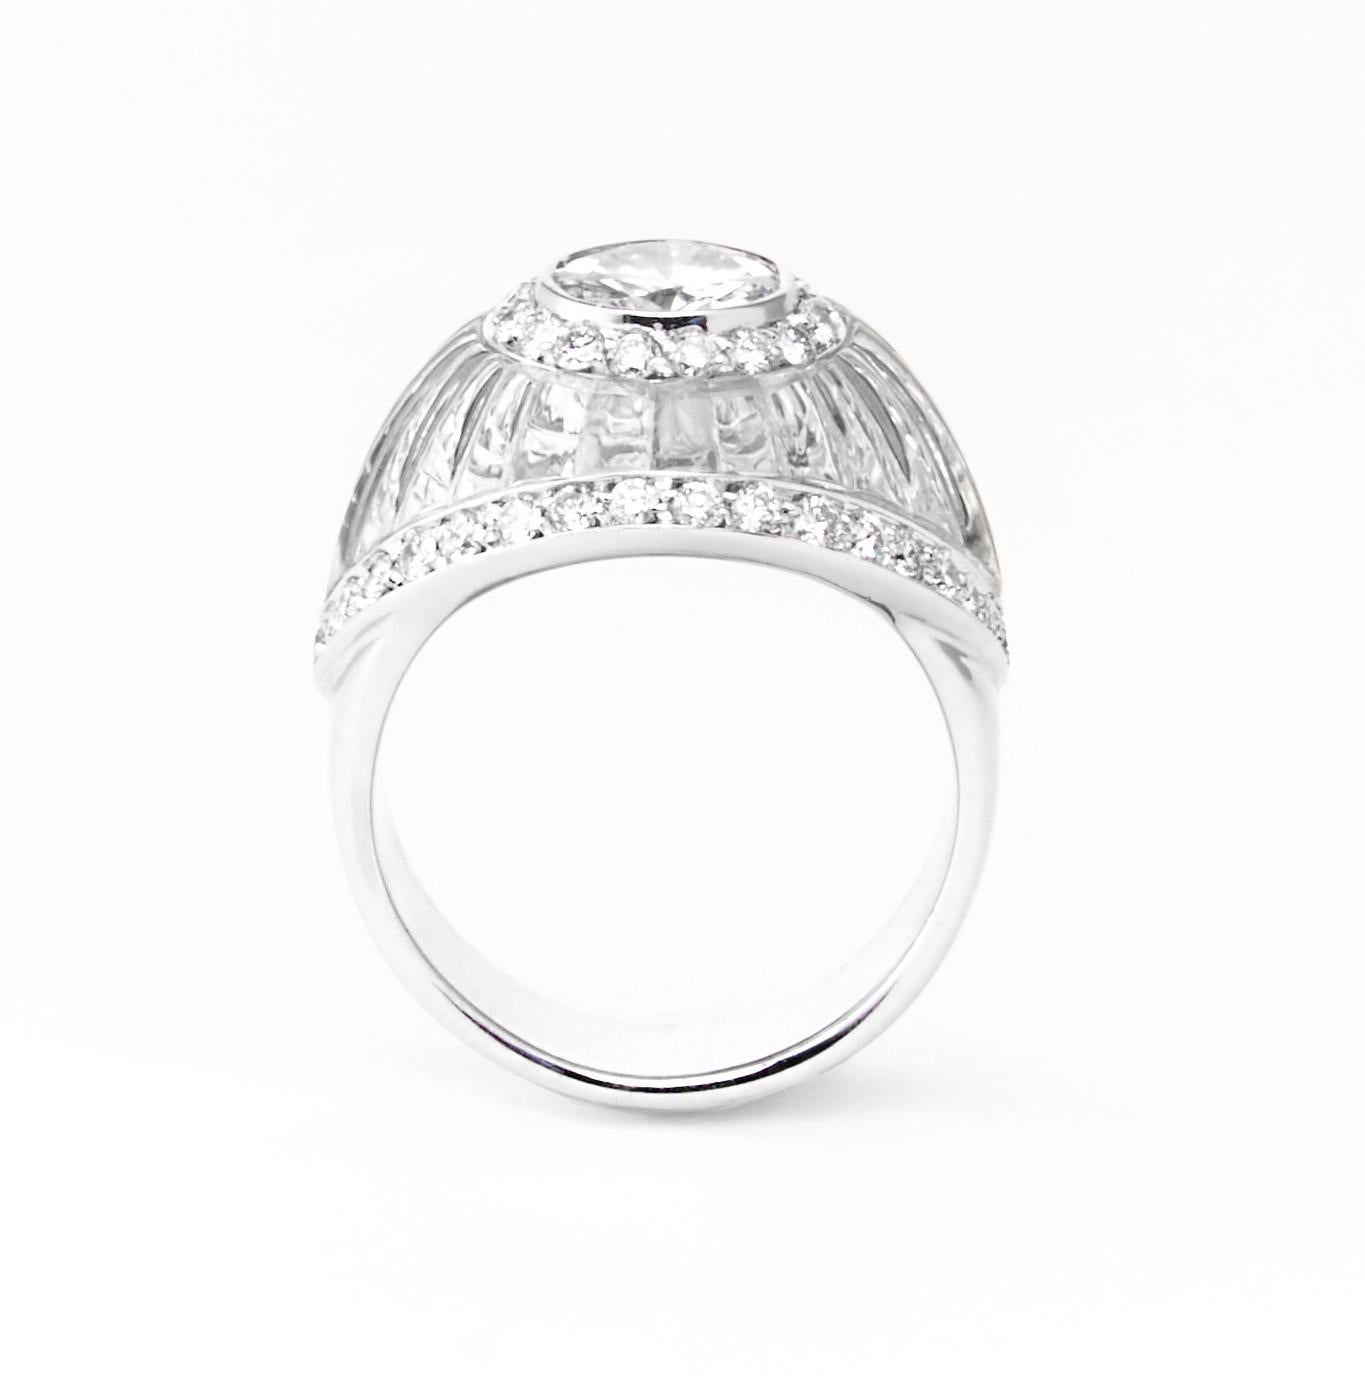 Erhöhen Sie Ihren Sinn für Luxus mit diesem in Italien gefertigten Ring des geschätzten Juweliers Fulvio Maria Scavia. Im Mittelpunkt dieses exquisiten Schmuckstücks steht ein strahlend weißer, runder Diamant im Brillantschliff, der kunstvoll in